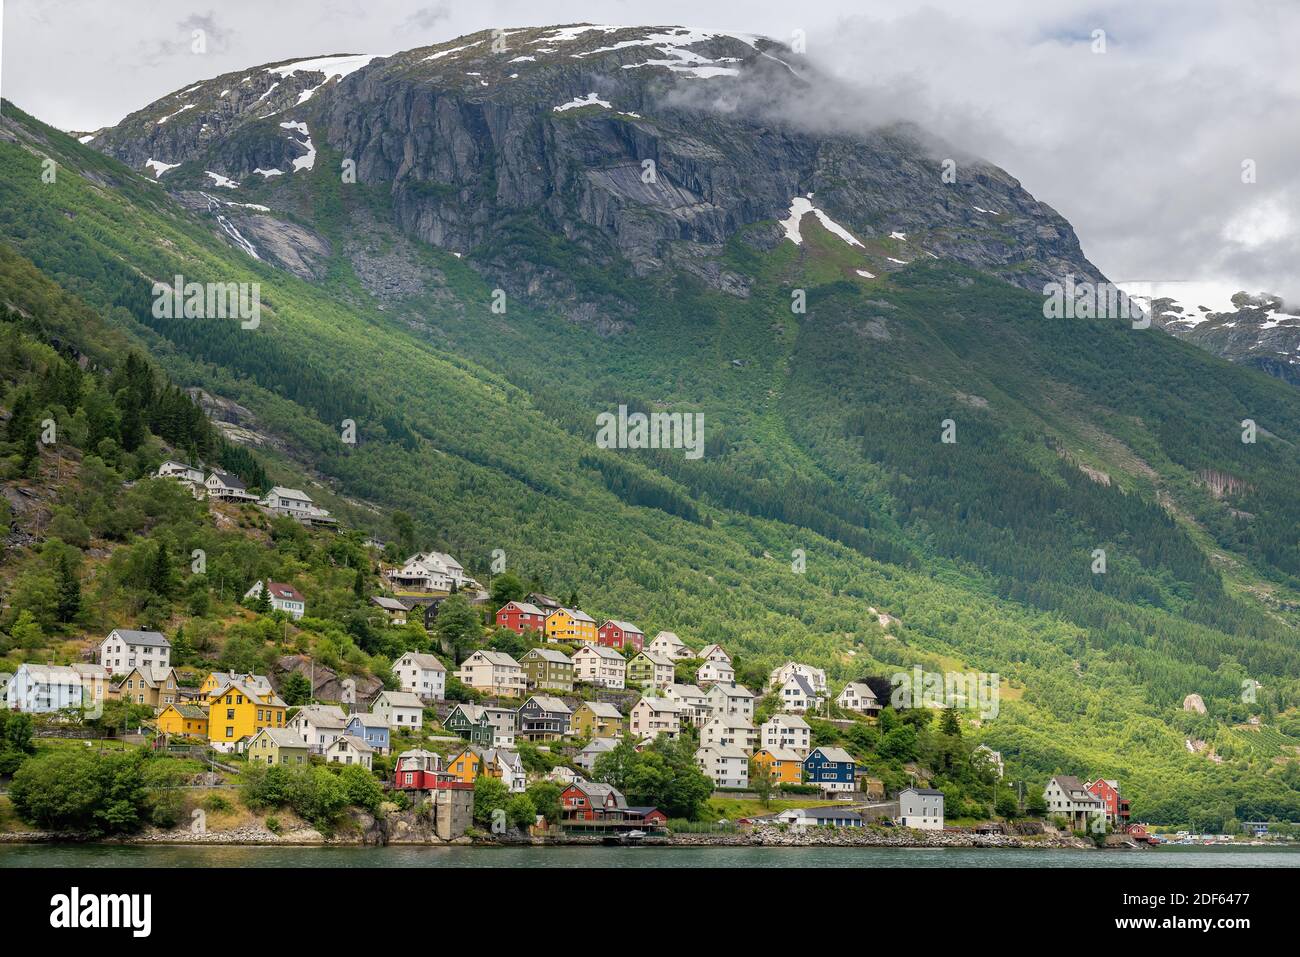 Eine malerische Aussicht auf ein Dorf mit verschiedenen farbigen Häusern in Odda, Norwegen. Stockfoto